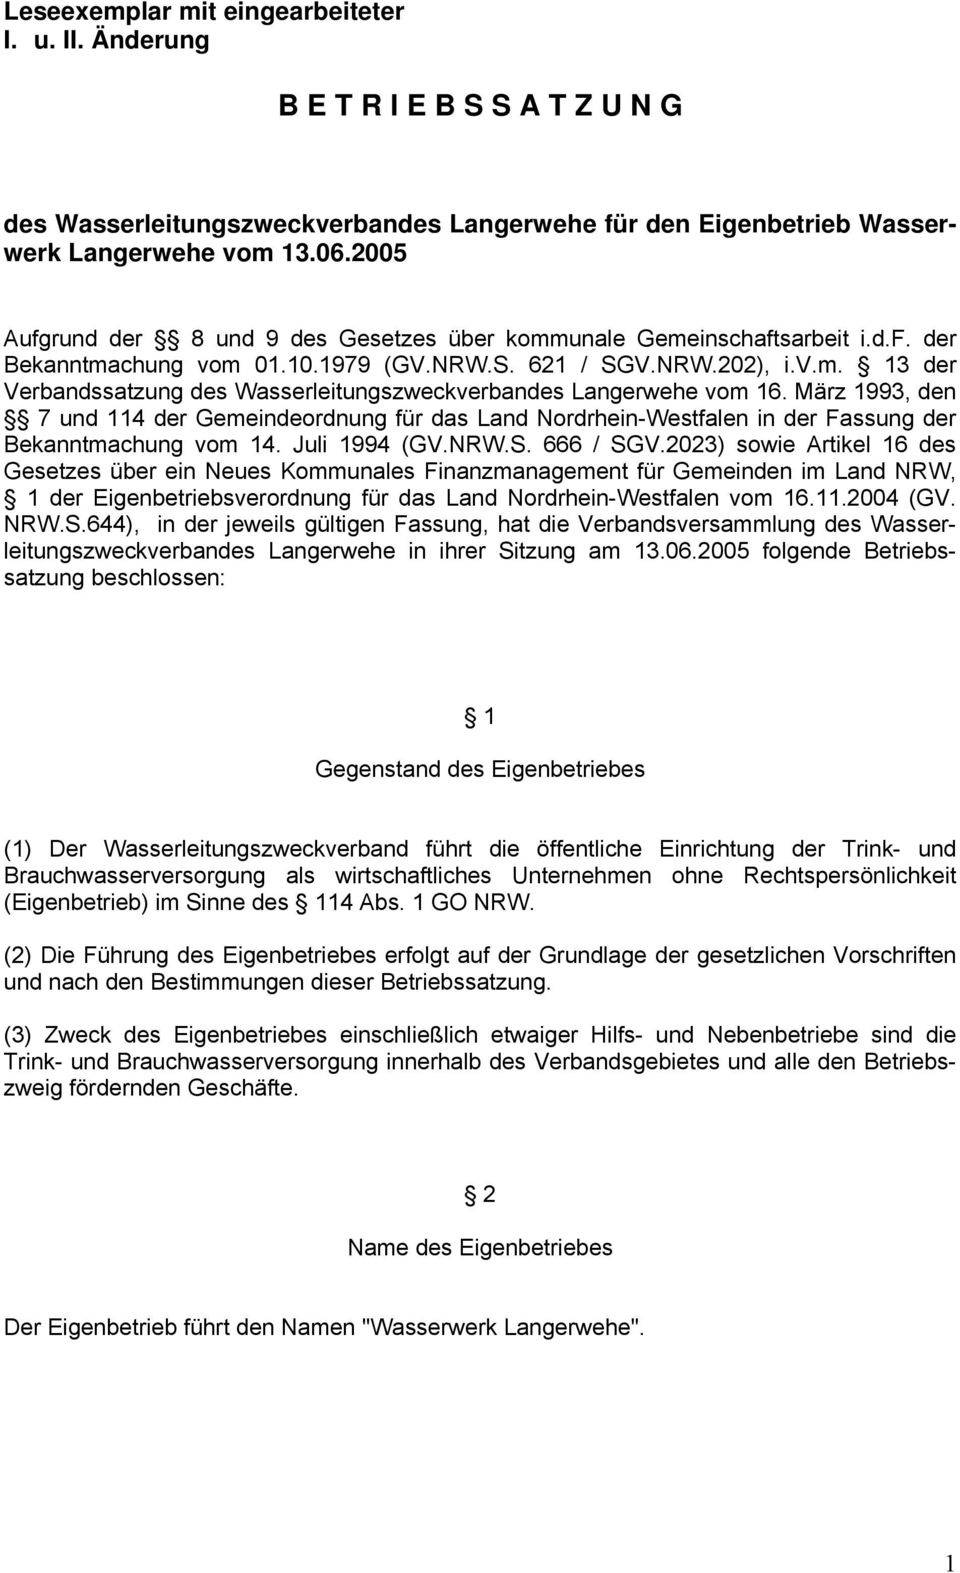 März 1993, den 7 und 114 der Gemeindeordnung für das Land Nordrhein-Westfalen in der Fassung der Bekanntmachung vom 14. Juli 1994 (GV.NRW.S. 666 / SGV.